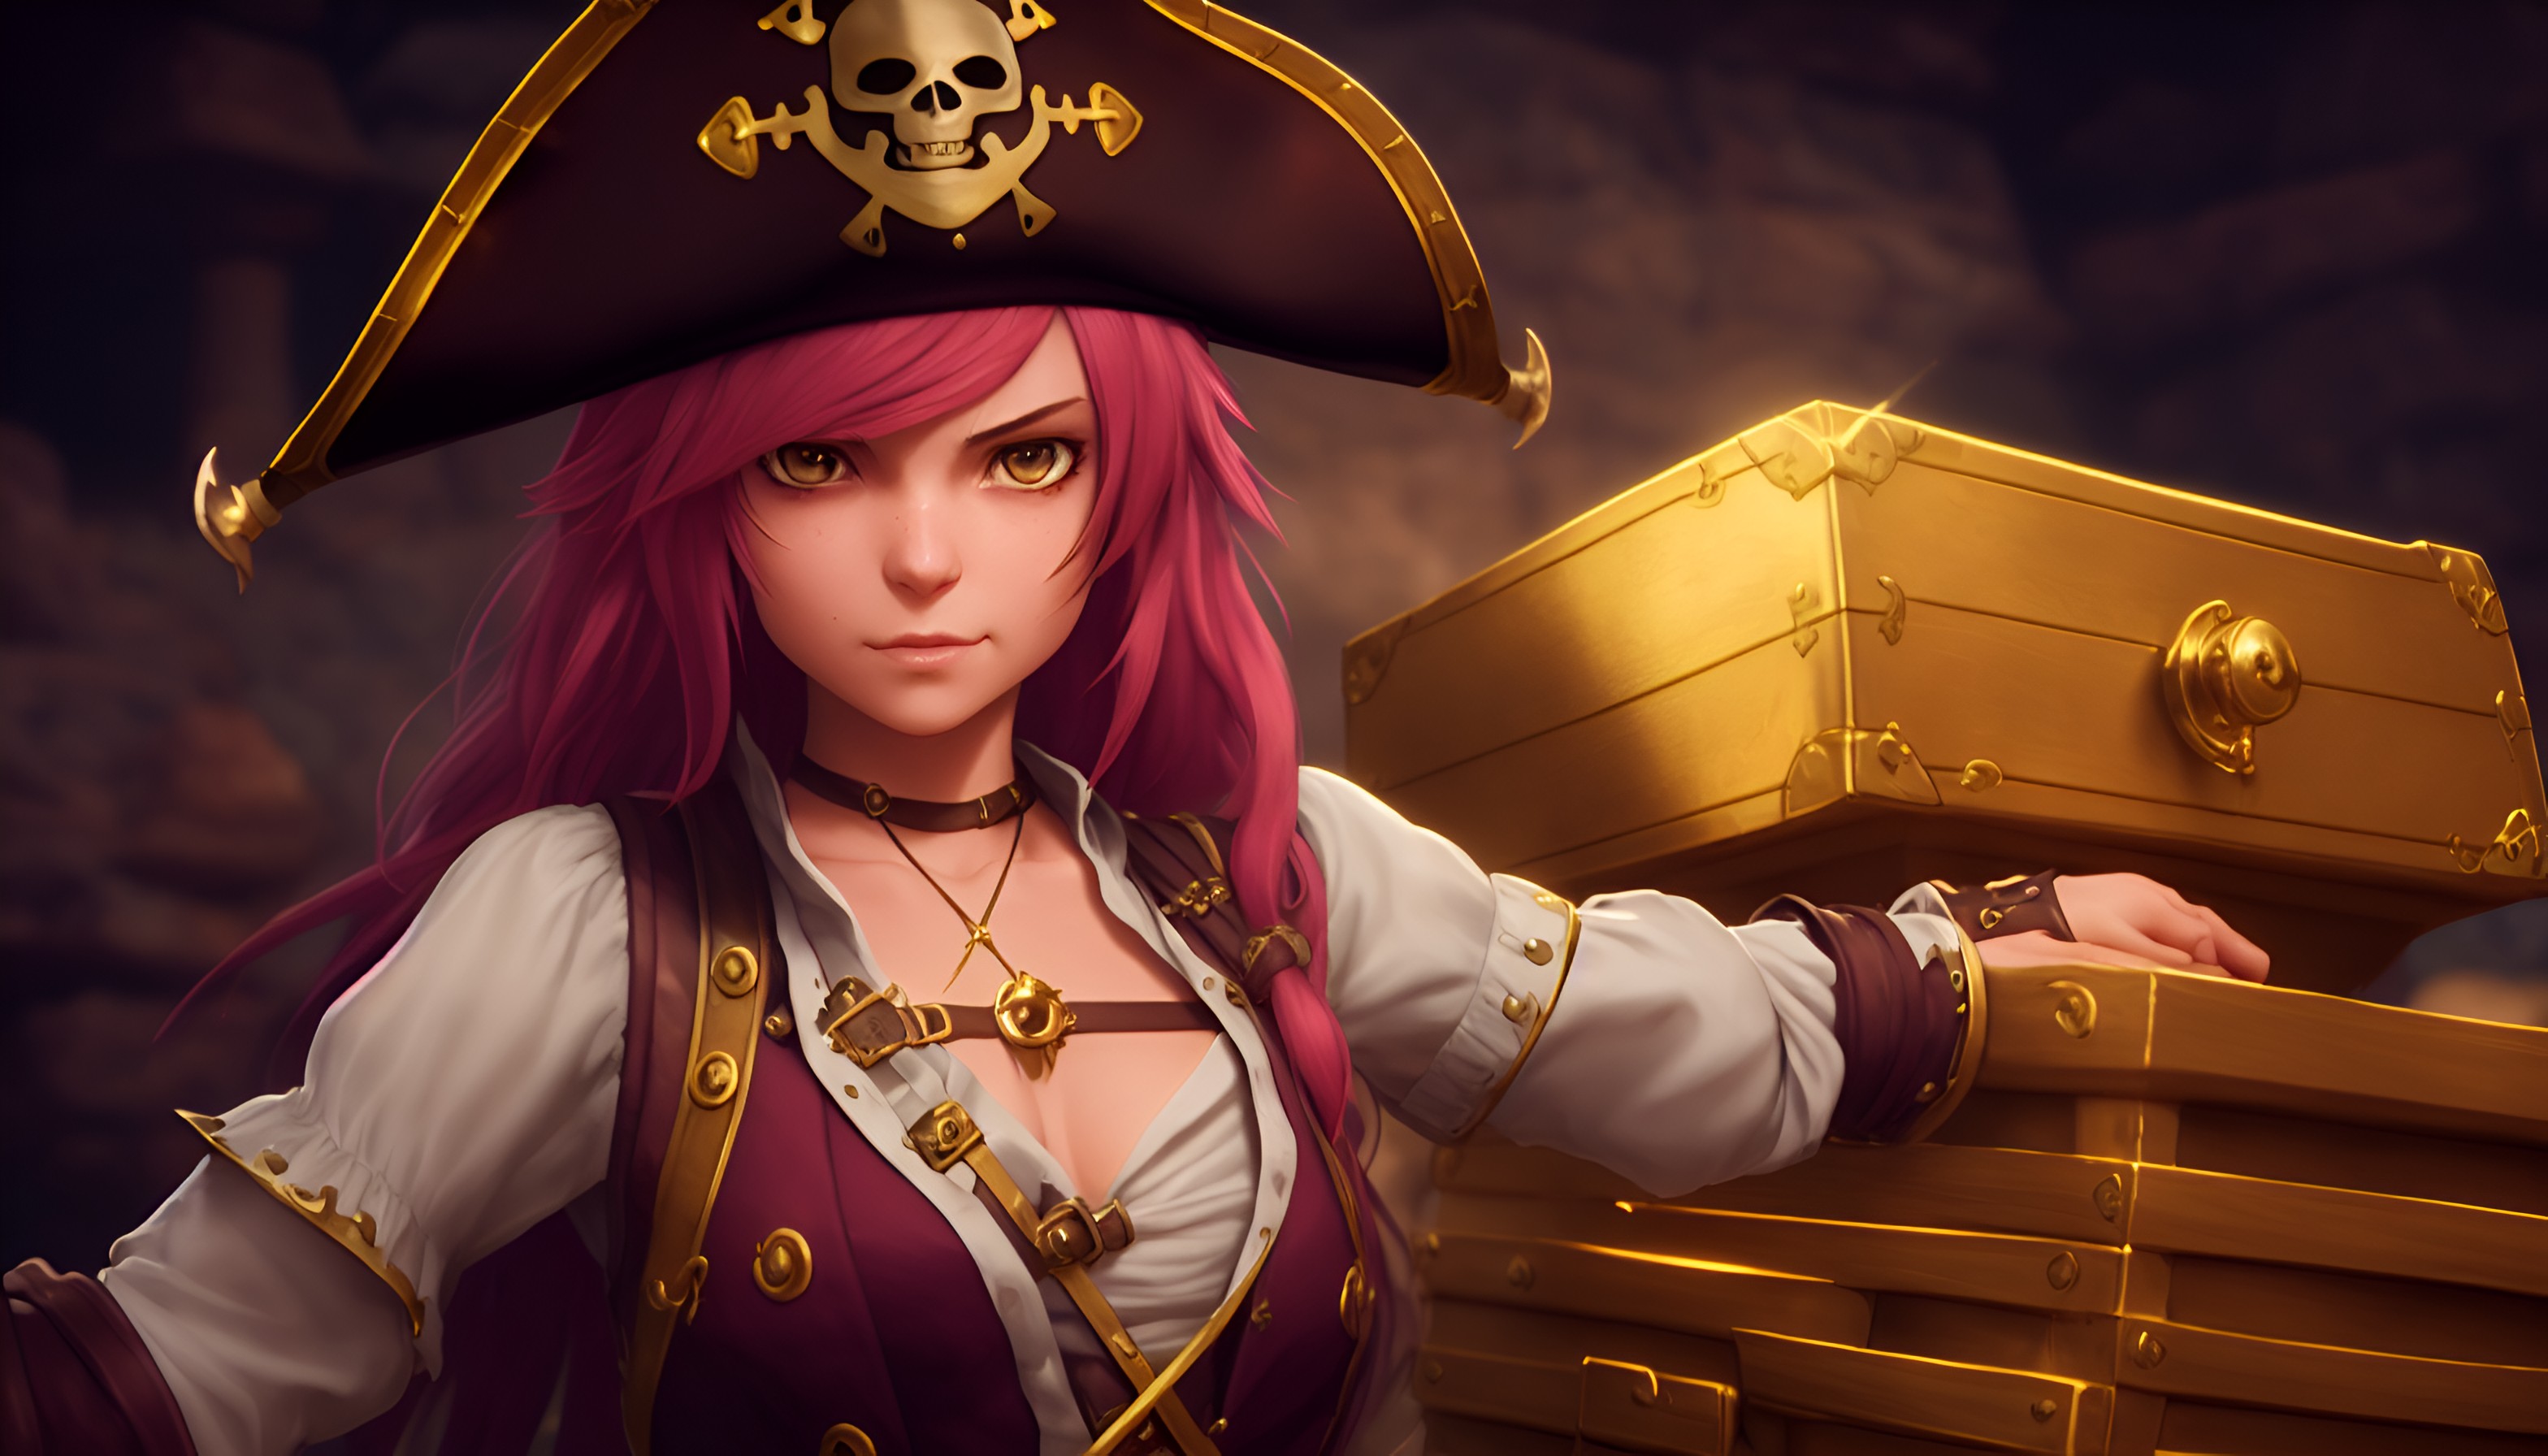 Linda screenshot  Golden time anime, Anime pirate girl, Anime